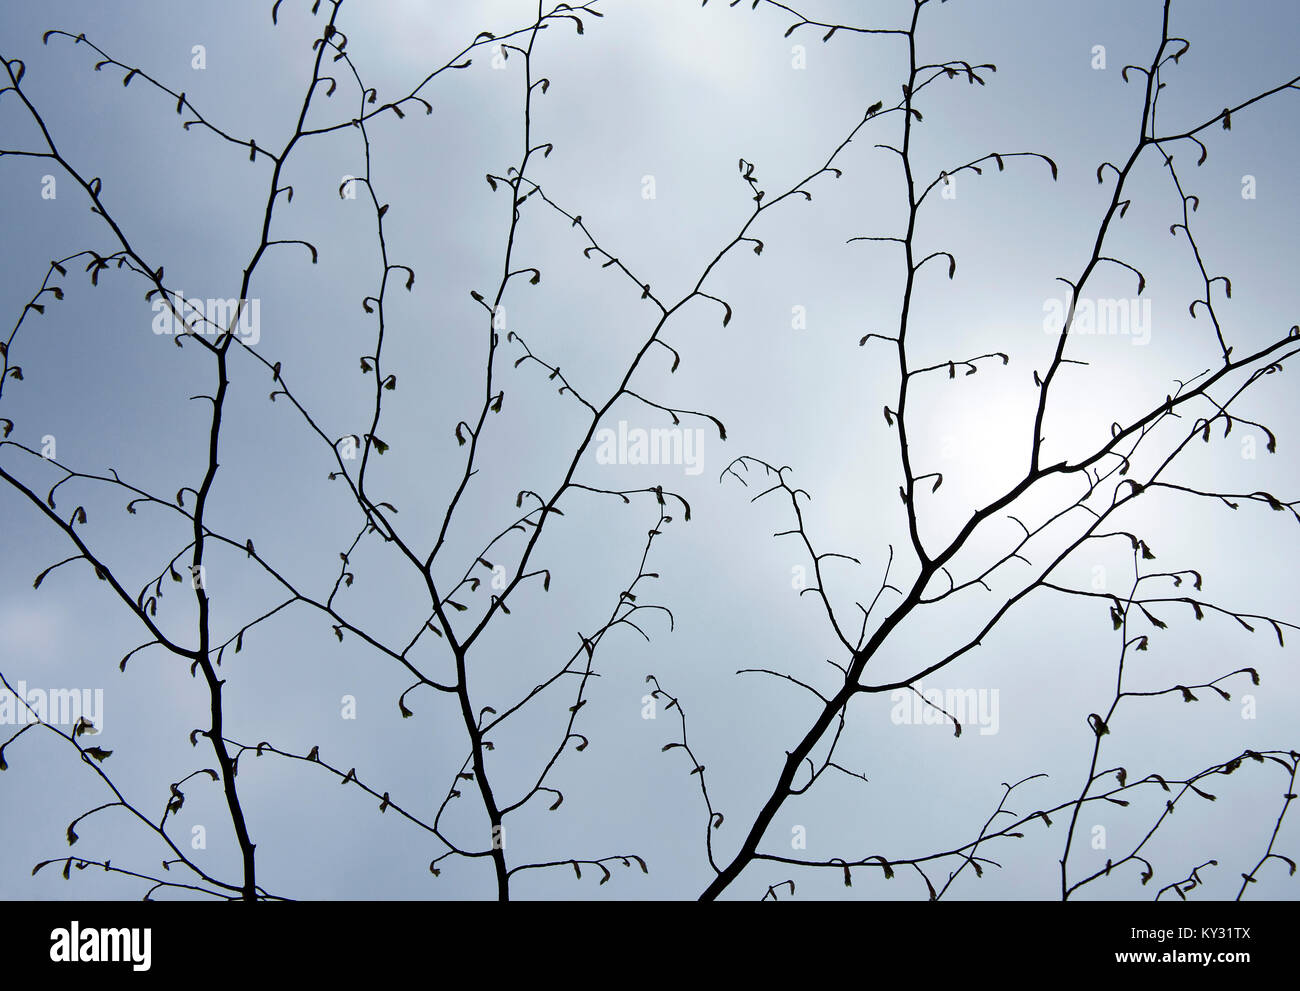 Buche im Frühjahr Knospen, Stamm und Zweig in einer grafischen Anzeige gegen einen blassen blauen Himmel anzeigen zeigt die Schönheit in der Natur mit auffälligen Mustern, Stockfoto